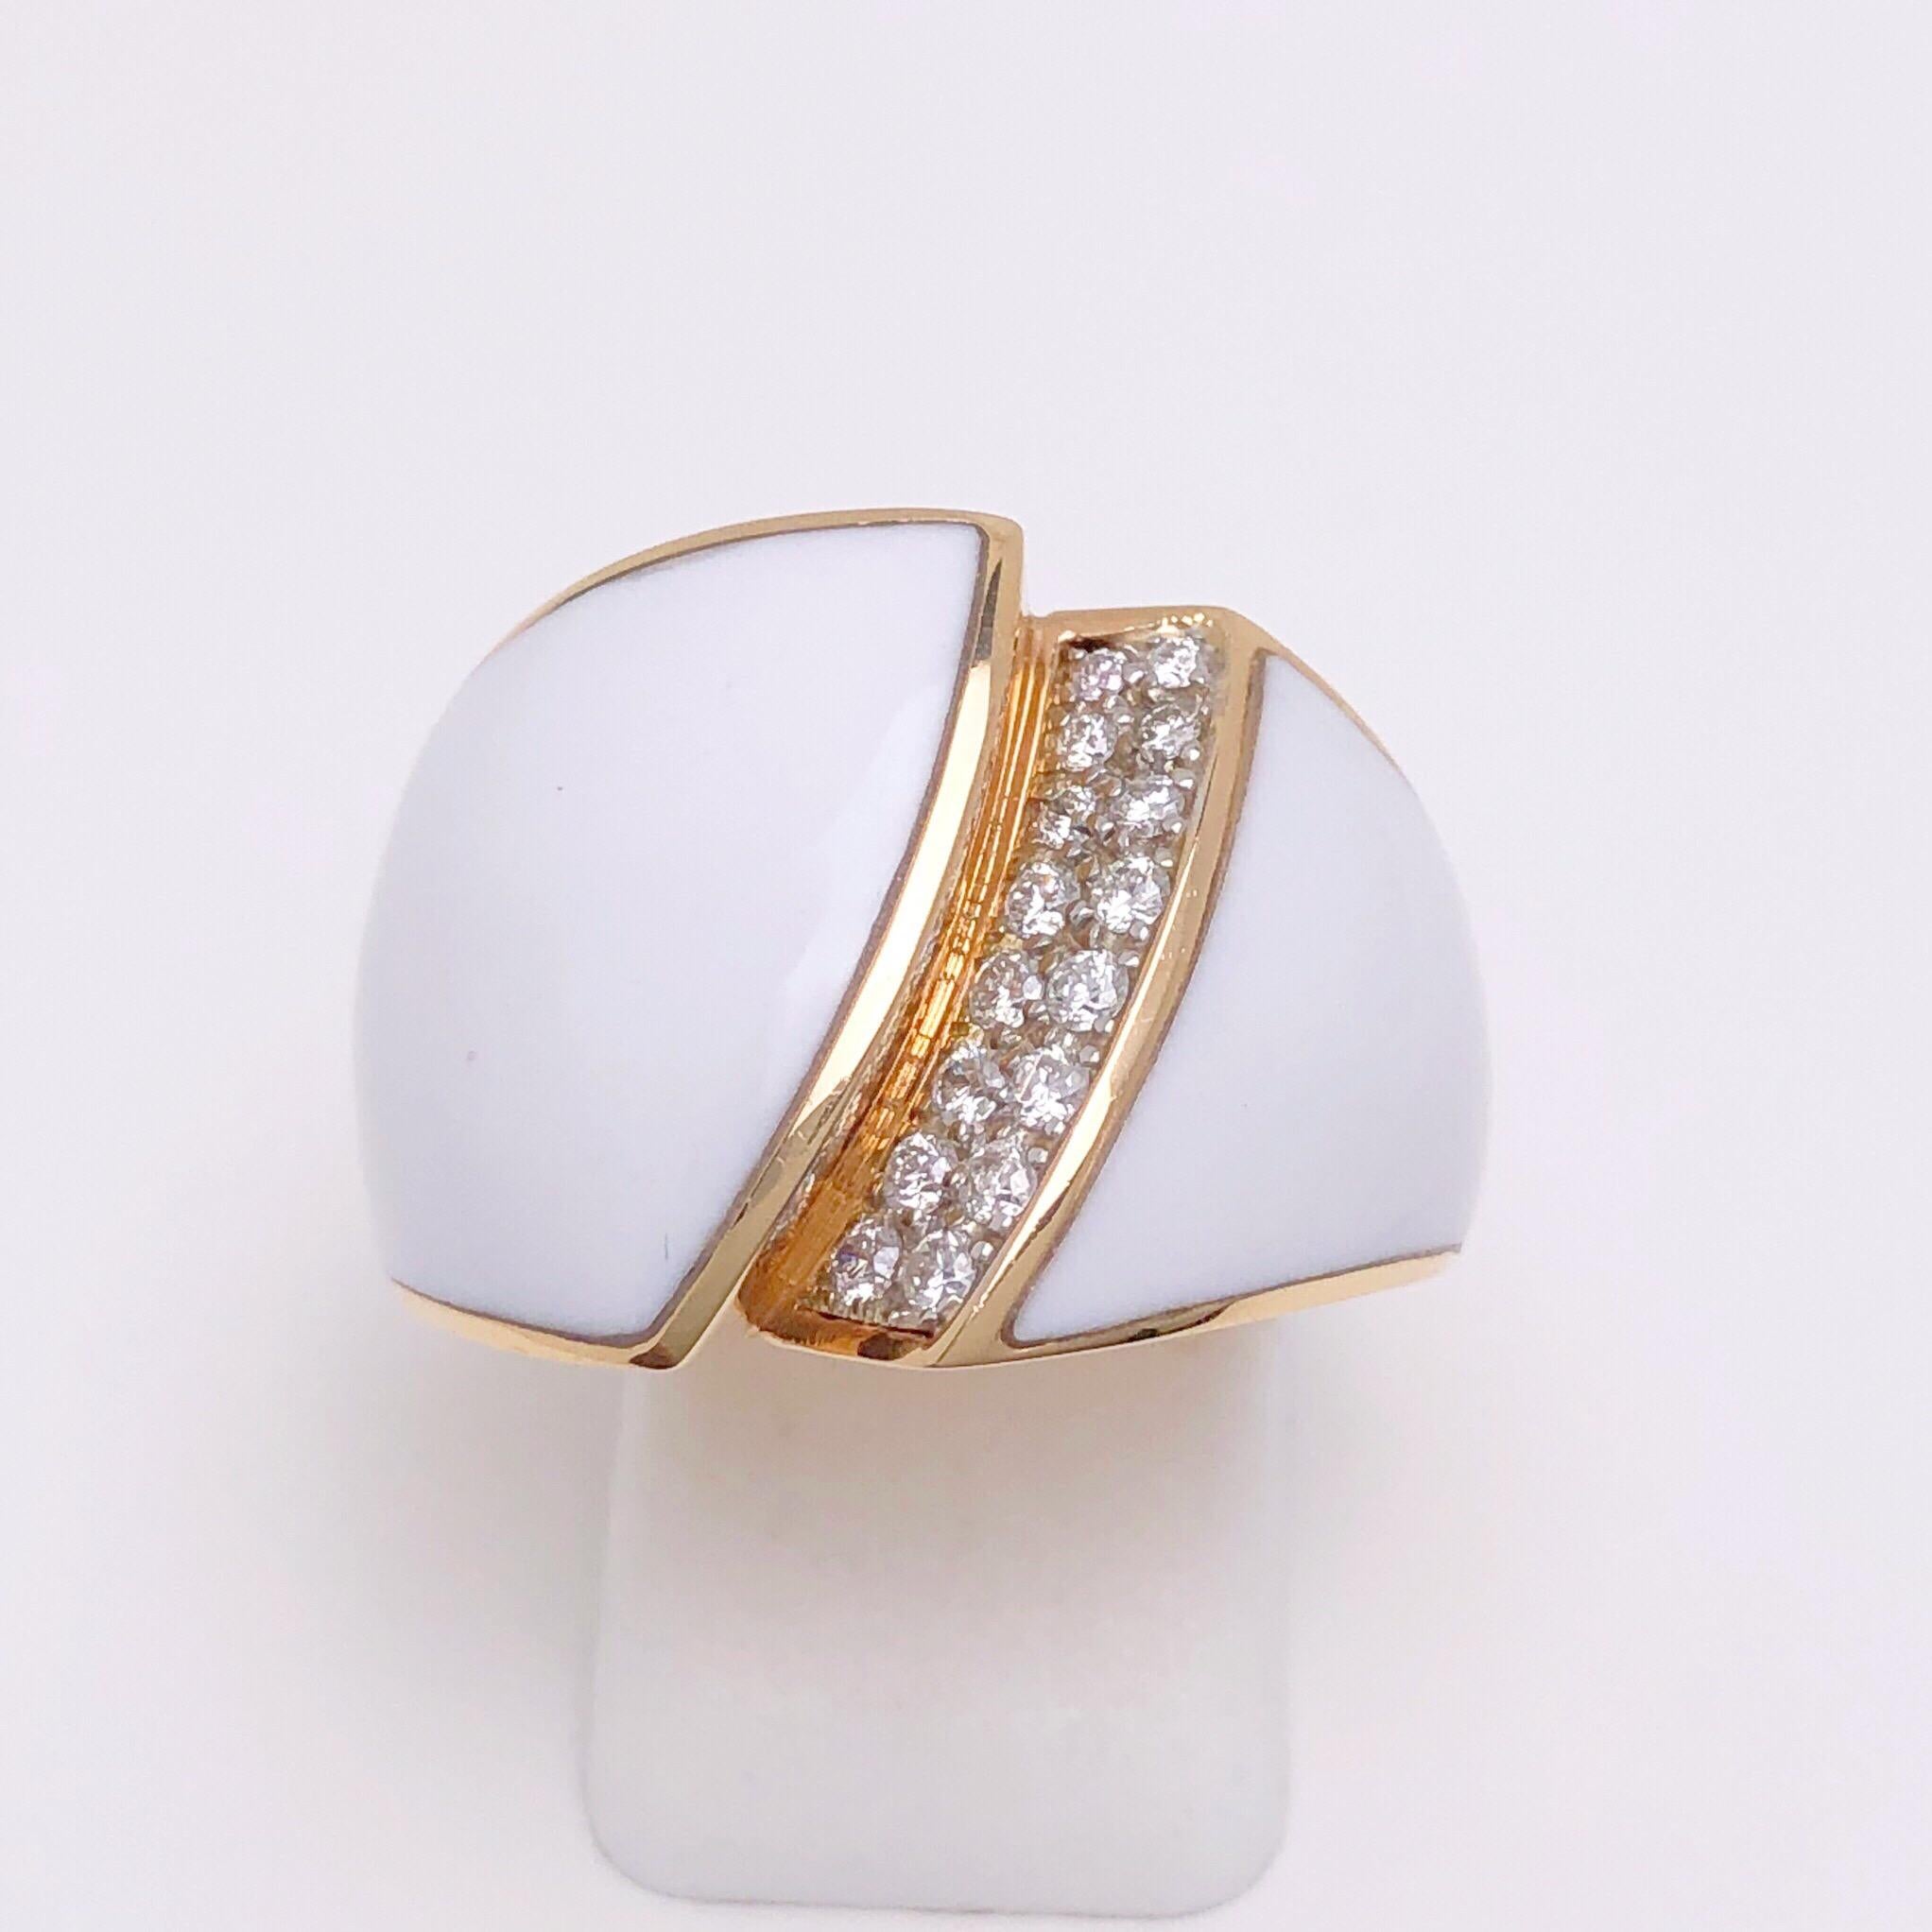 Dieser wunderschön gestaltete Ring der renommierten italienischen Schmuckmarke Chimento vereint 18 Karat Roségold, 0,28 Karat Diamanten und weißen Achat zu einem atemberaubenden und gewagten Ring. 
Ring Größe 7